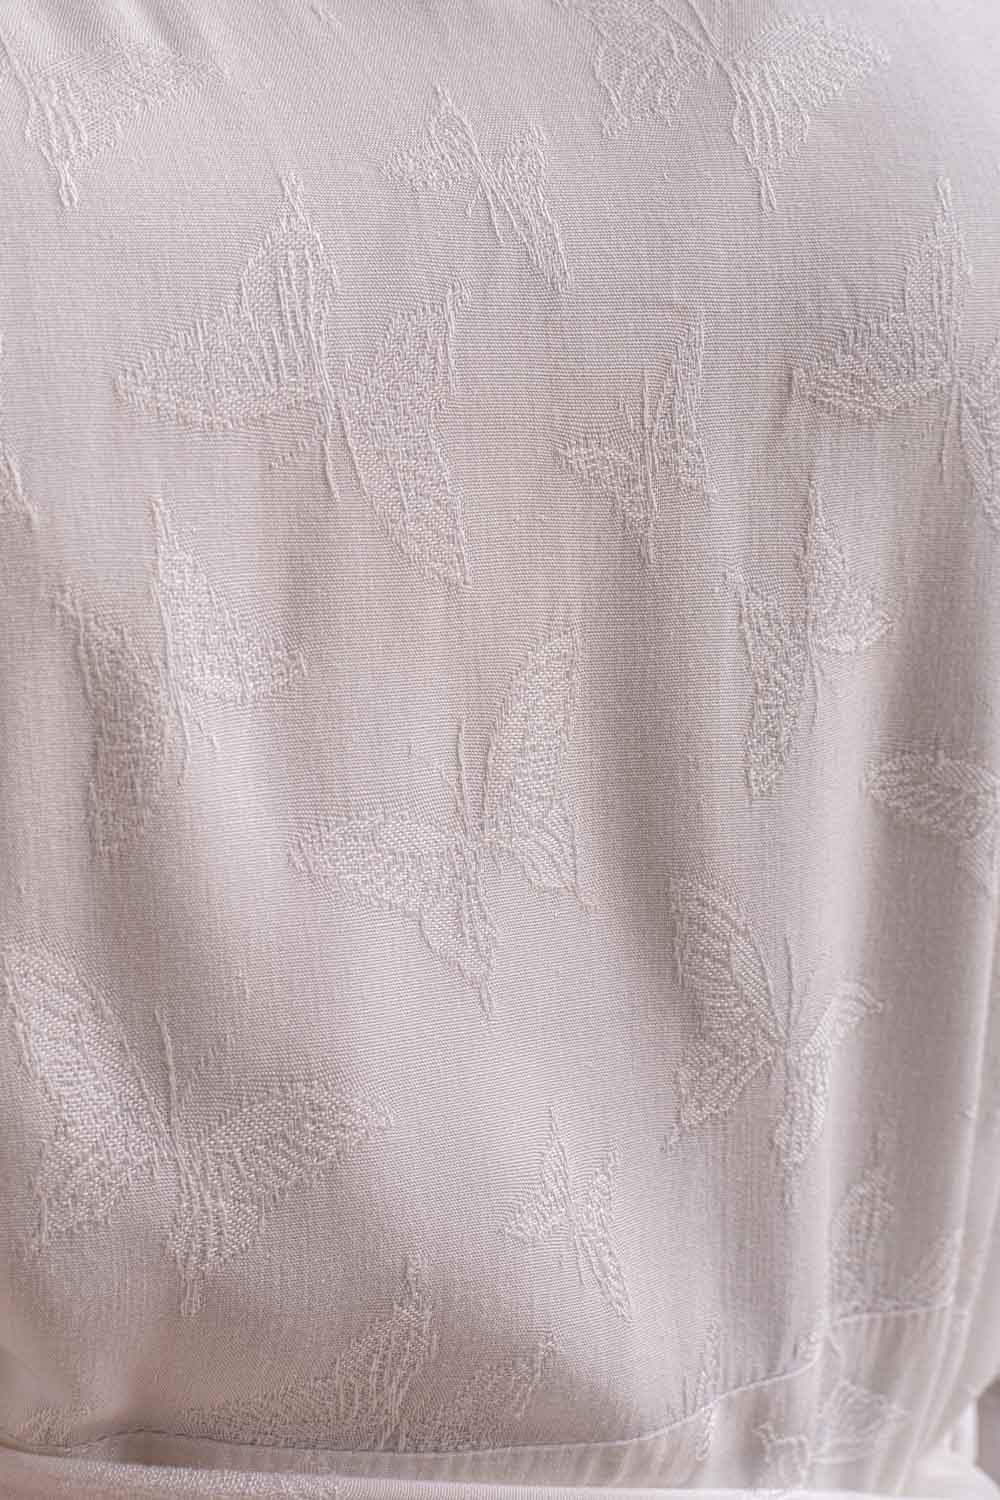 Malak Jacquard Butterfly Pattern White Wrap Dress